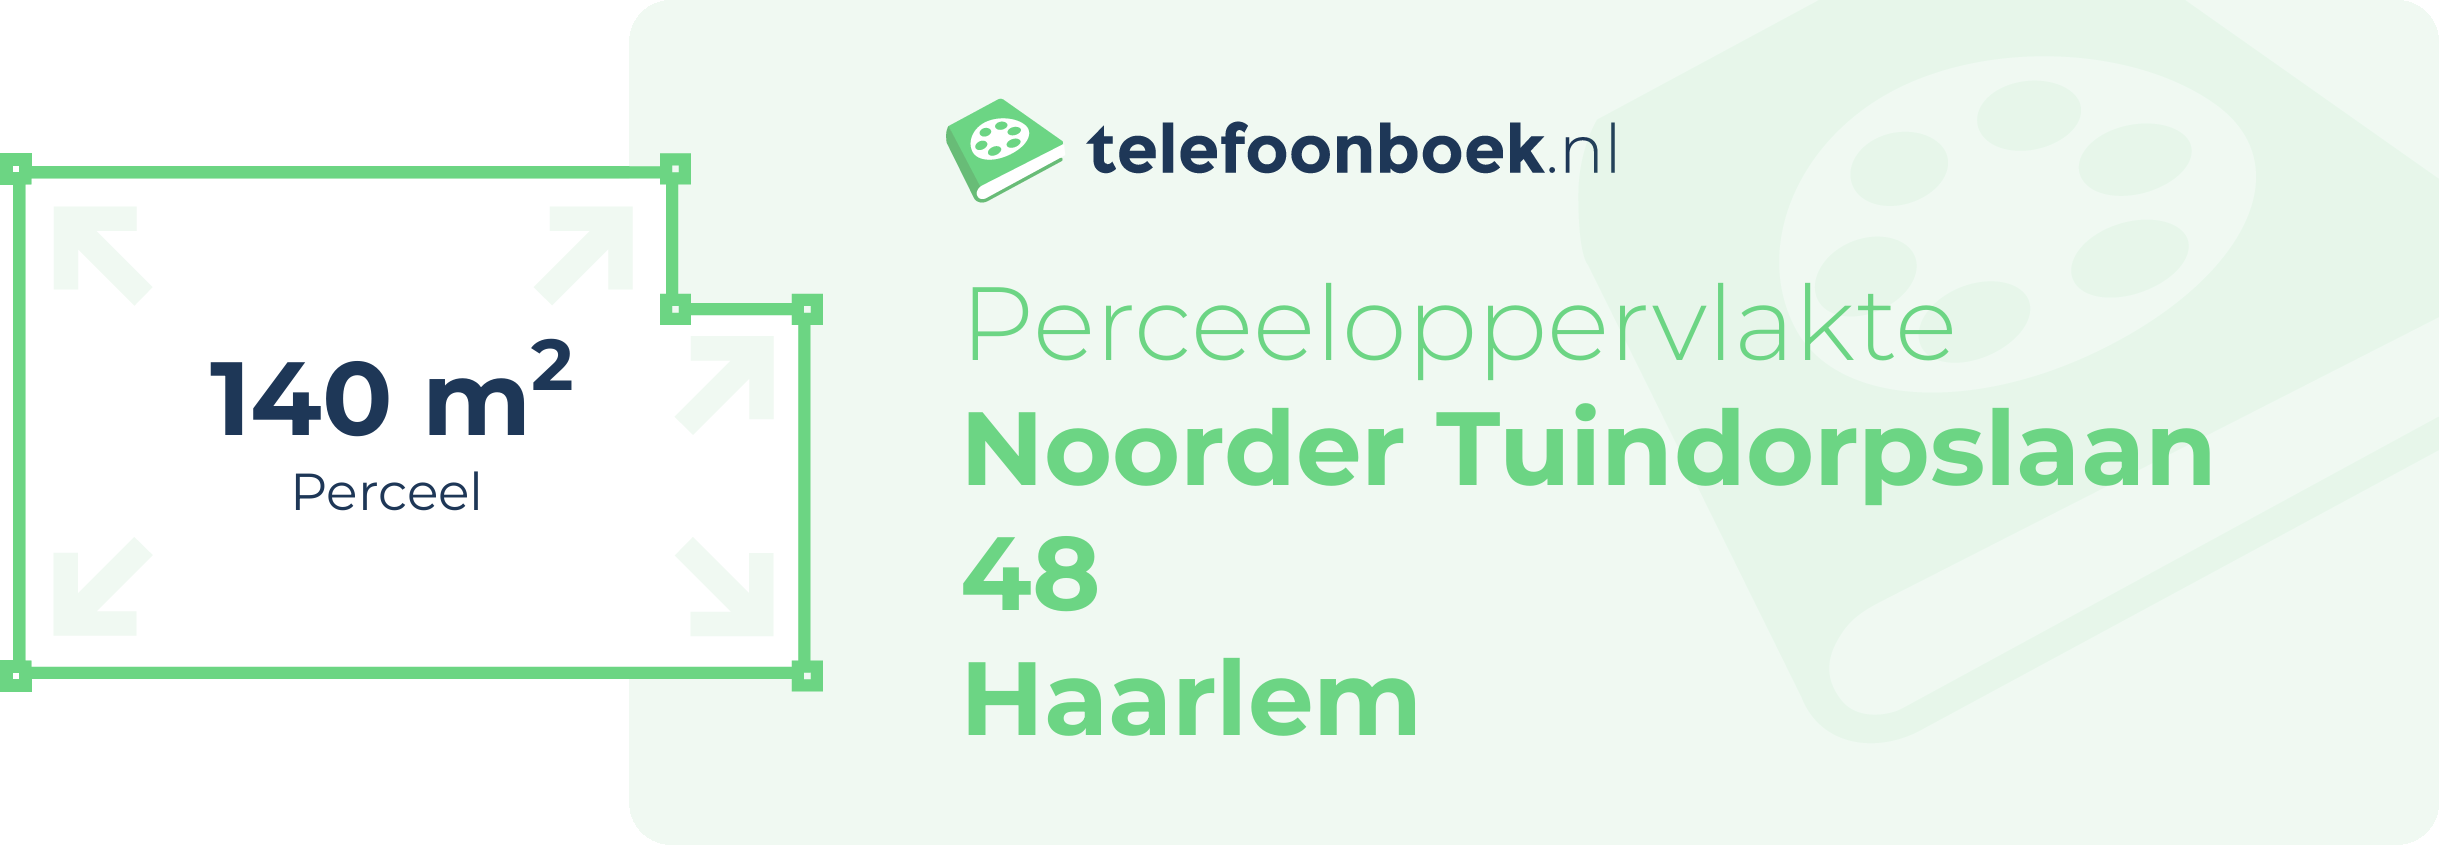 Perceeloppervlakte Noorder Tuindorpslaan 48 Haarlem